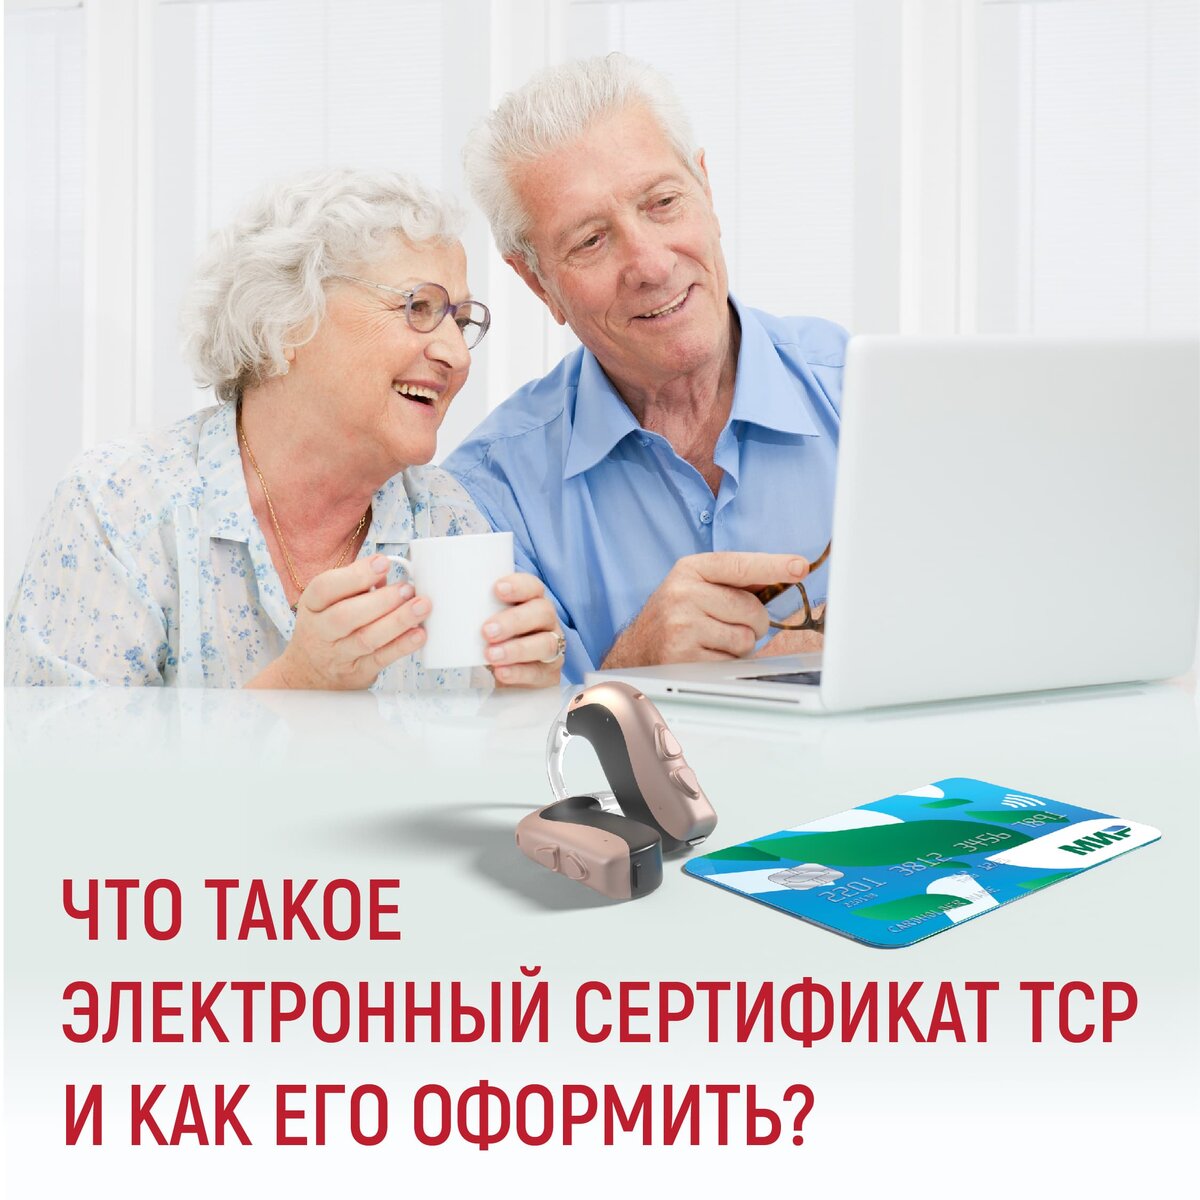 Электронный сертификат — новая альтернатива традиционному формату получения технических средств реабилитации (ТСР) от Фонда социального страхования (ФСС).